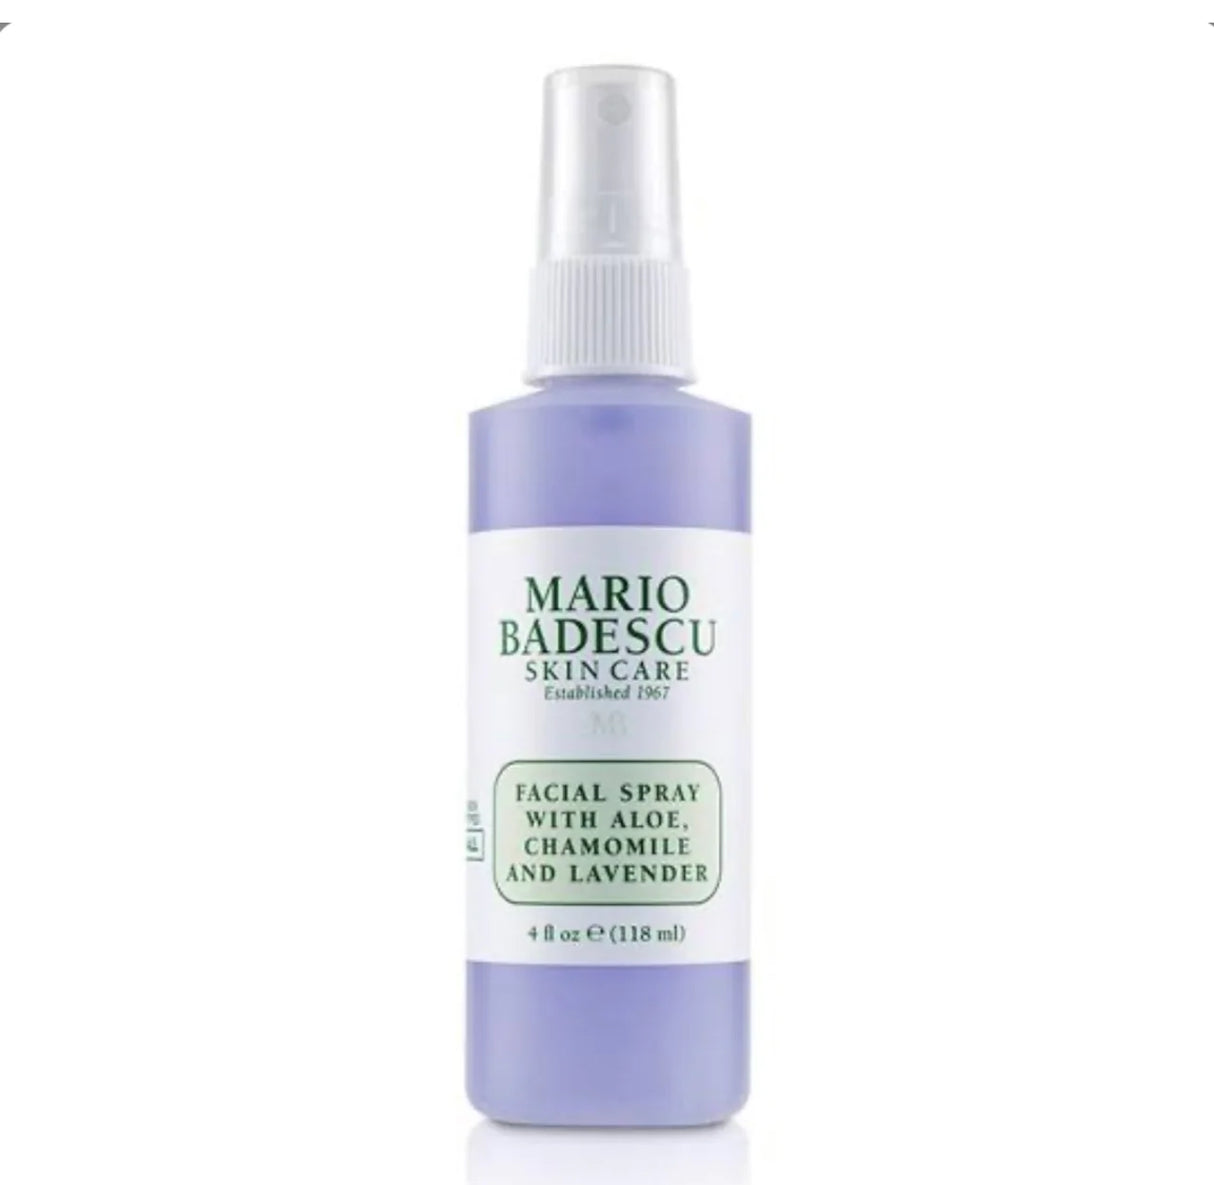 Mario Badescu Facial Spray With Aloe, Chamomile And Lavender (8 oz.)